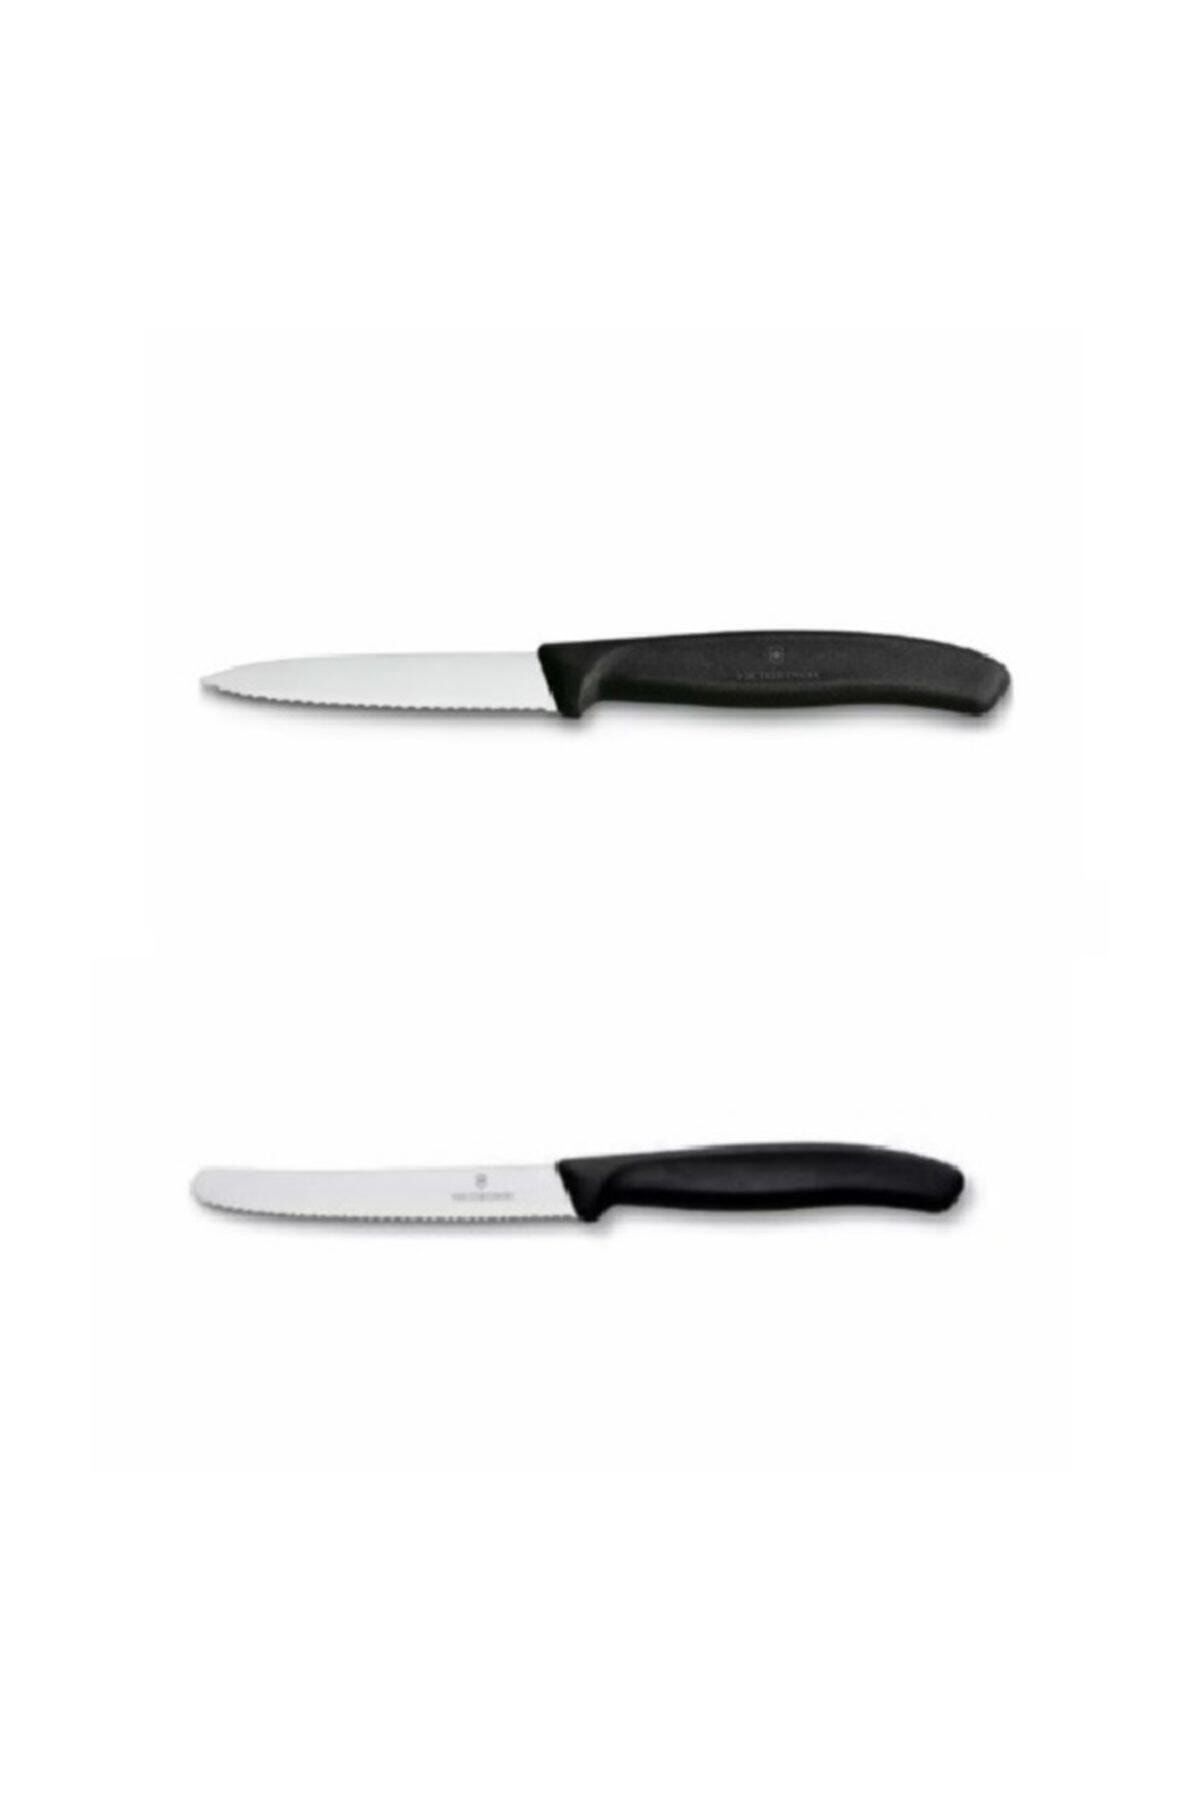 VICTORINOX 8cm Tırtıklı Soyma Bıçağı Siyah & Domates Bıçağı 11 cm Siyah